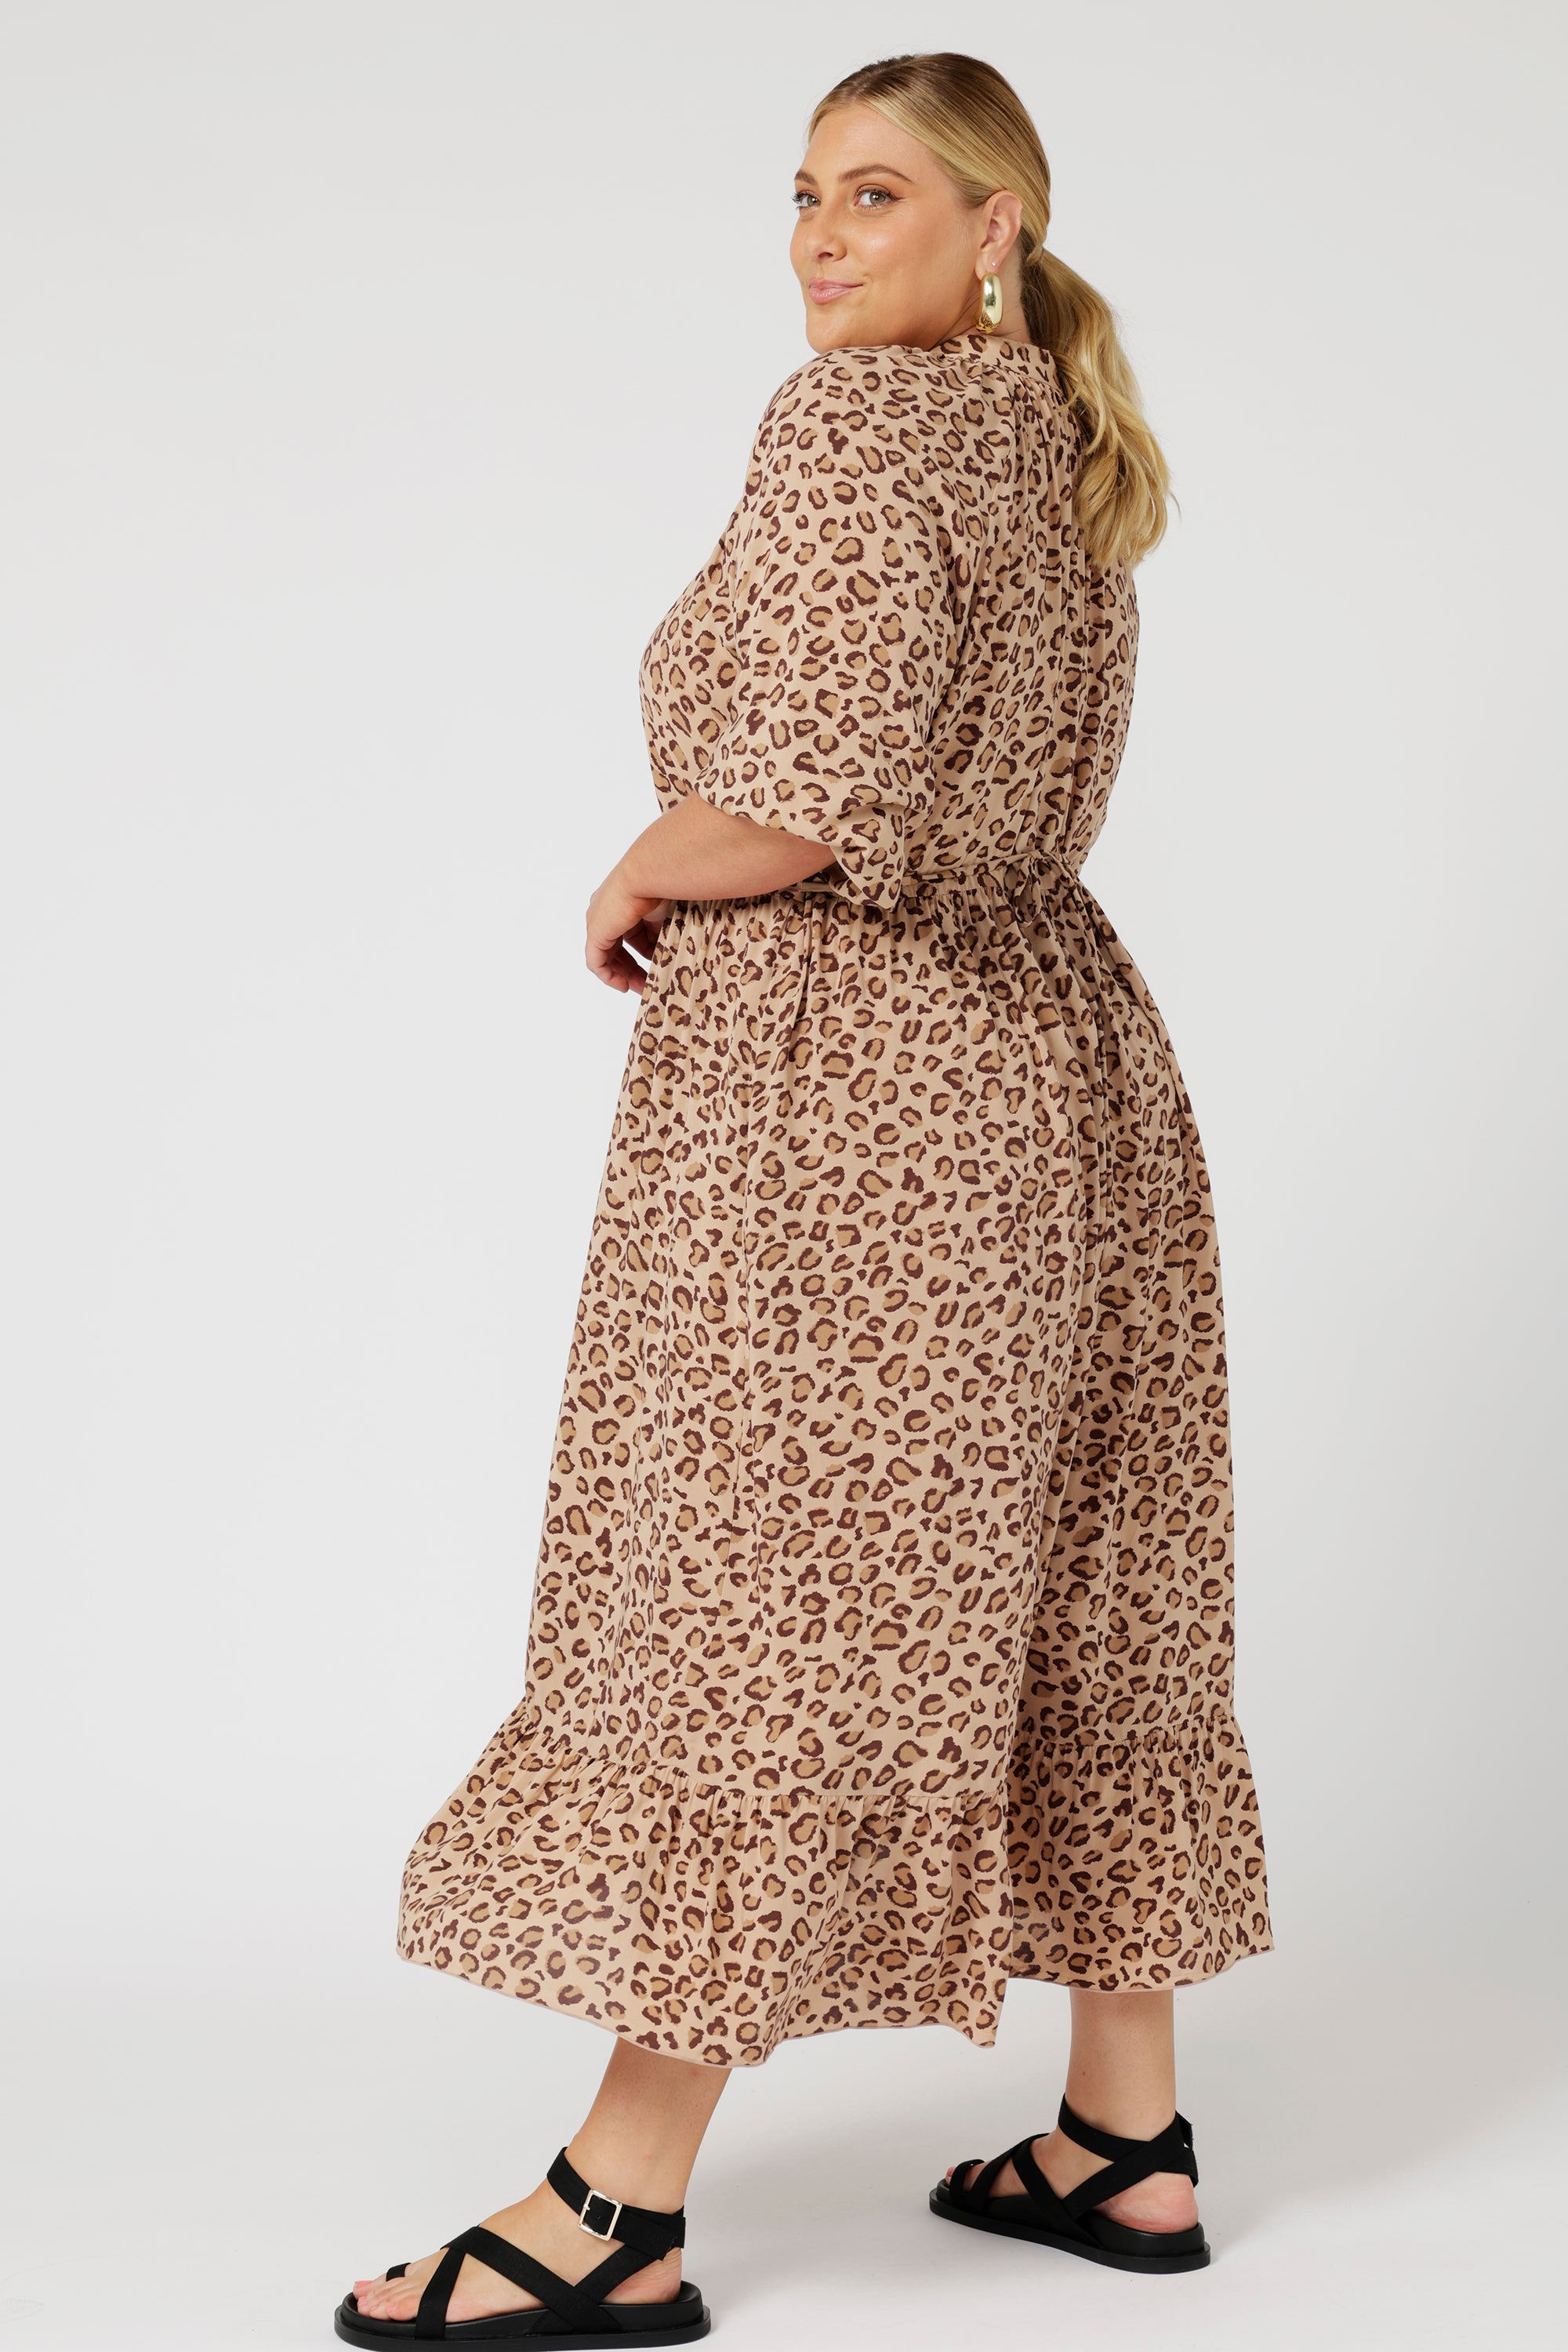 Athena Dress | Leopard - Saffron Road